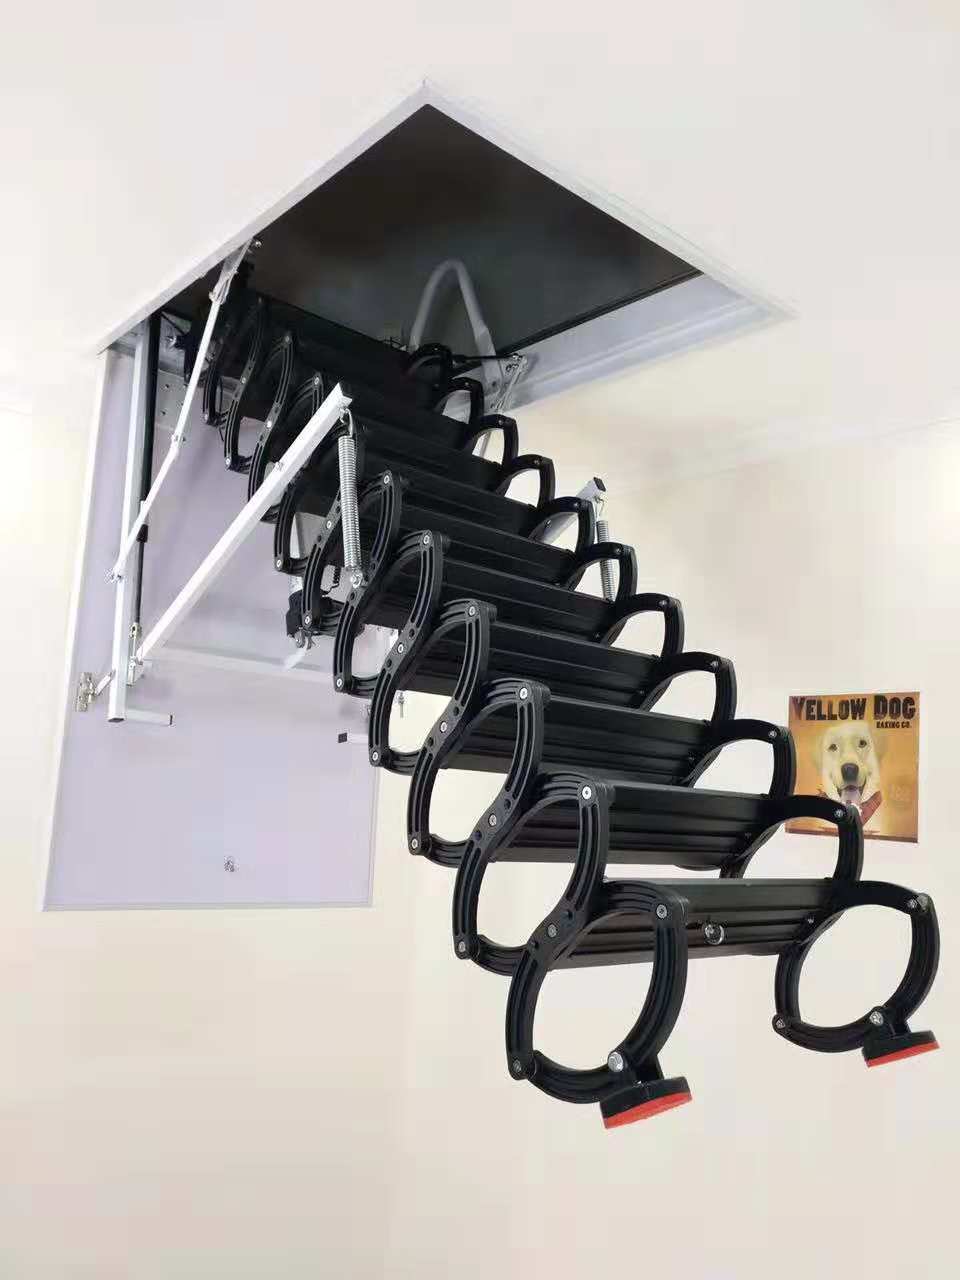 吉林伸缩楼梯提供安装服务